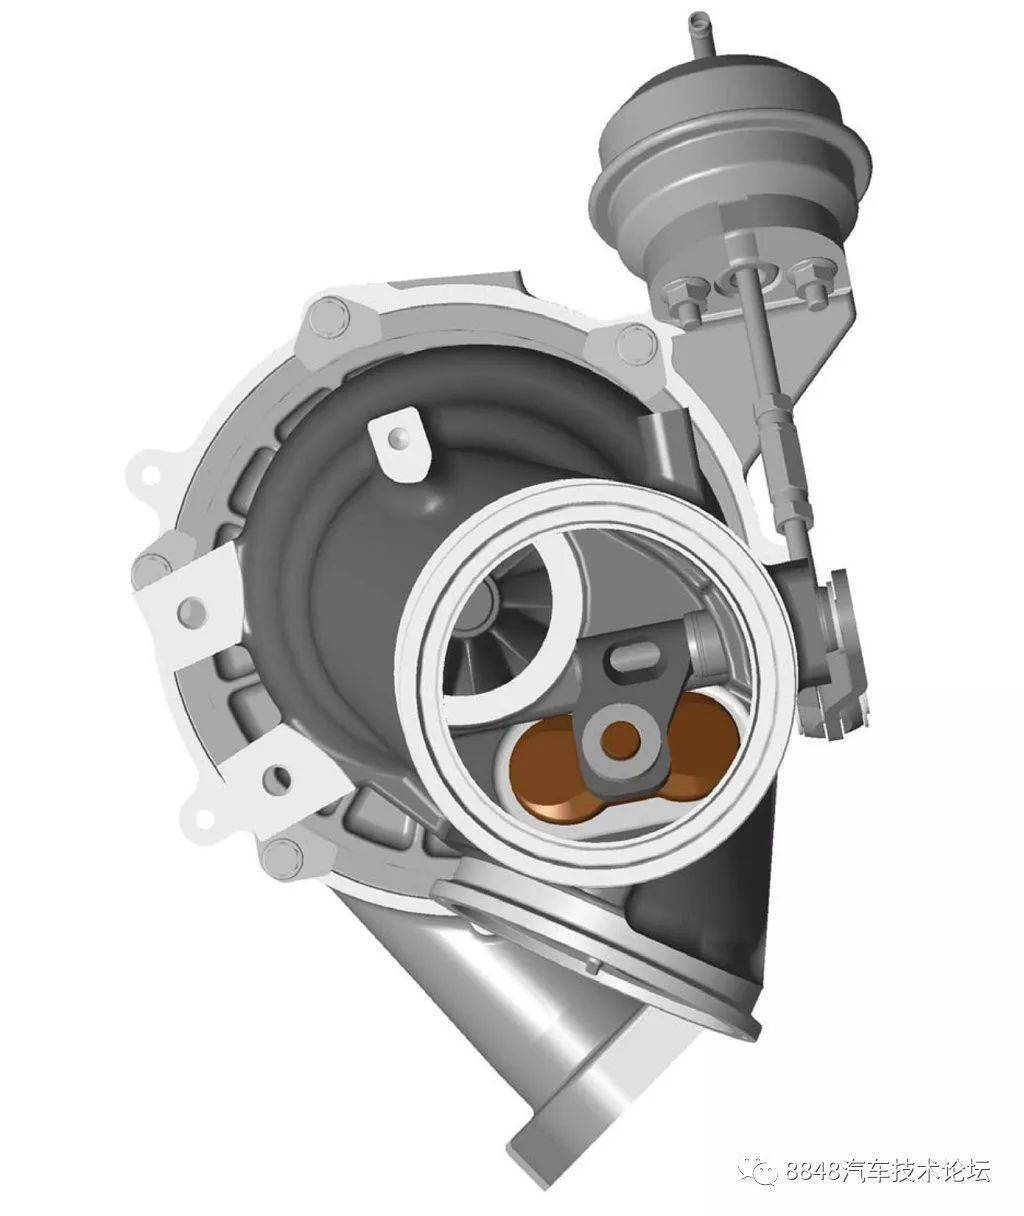 图解法拉利gdi f154cb发动机钛合金涡轮增压器